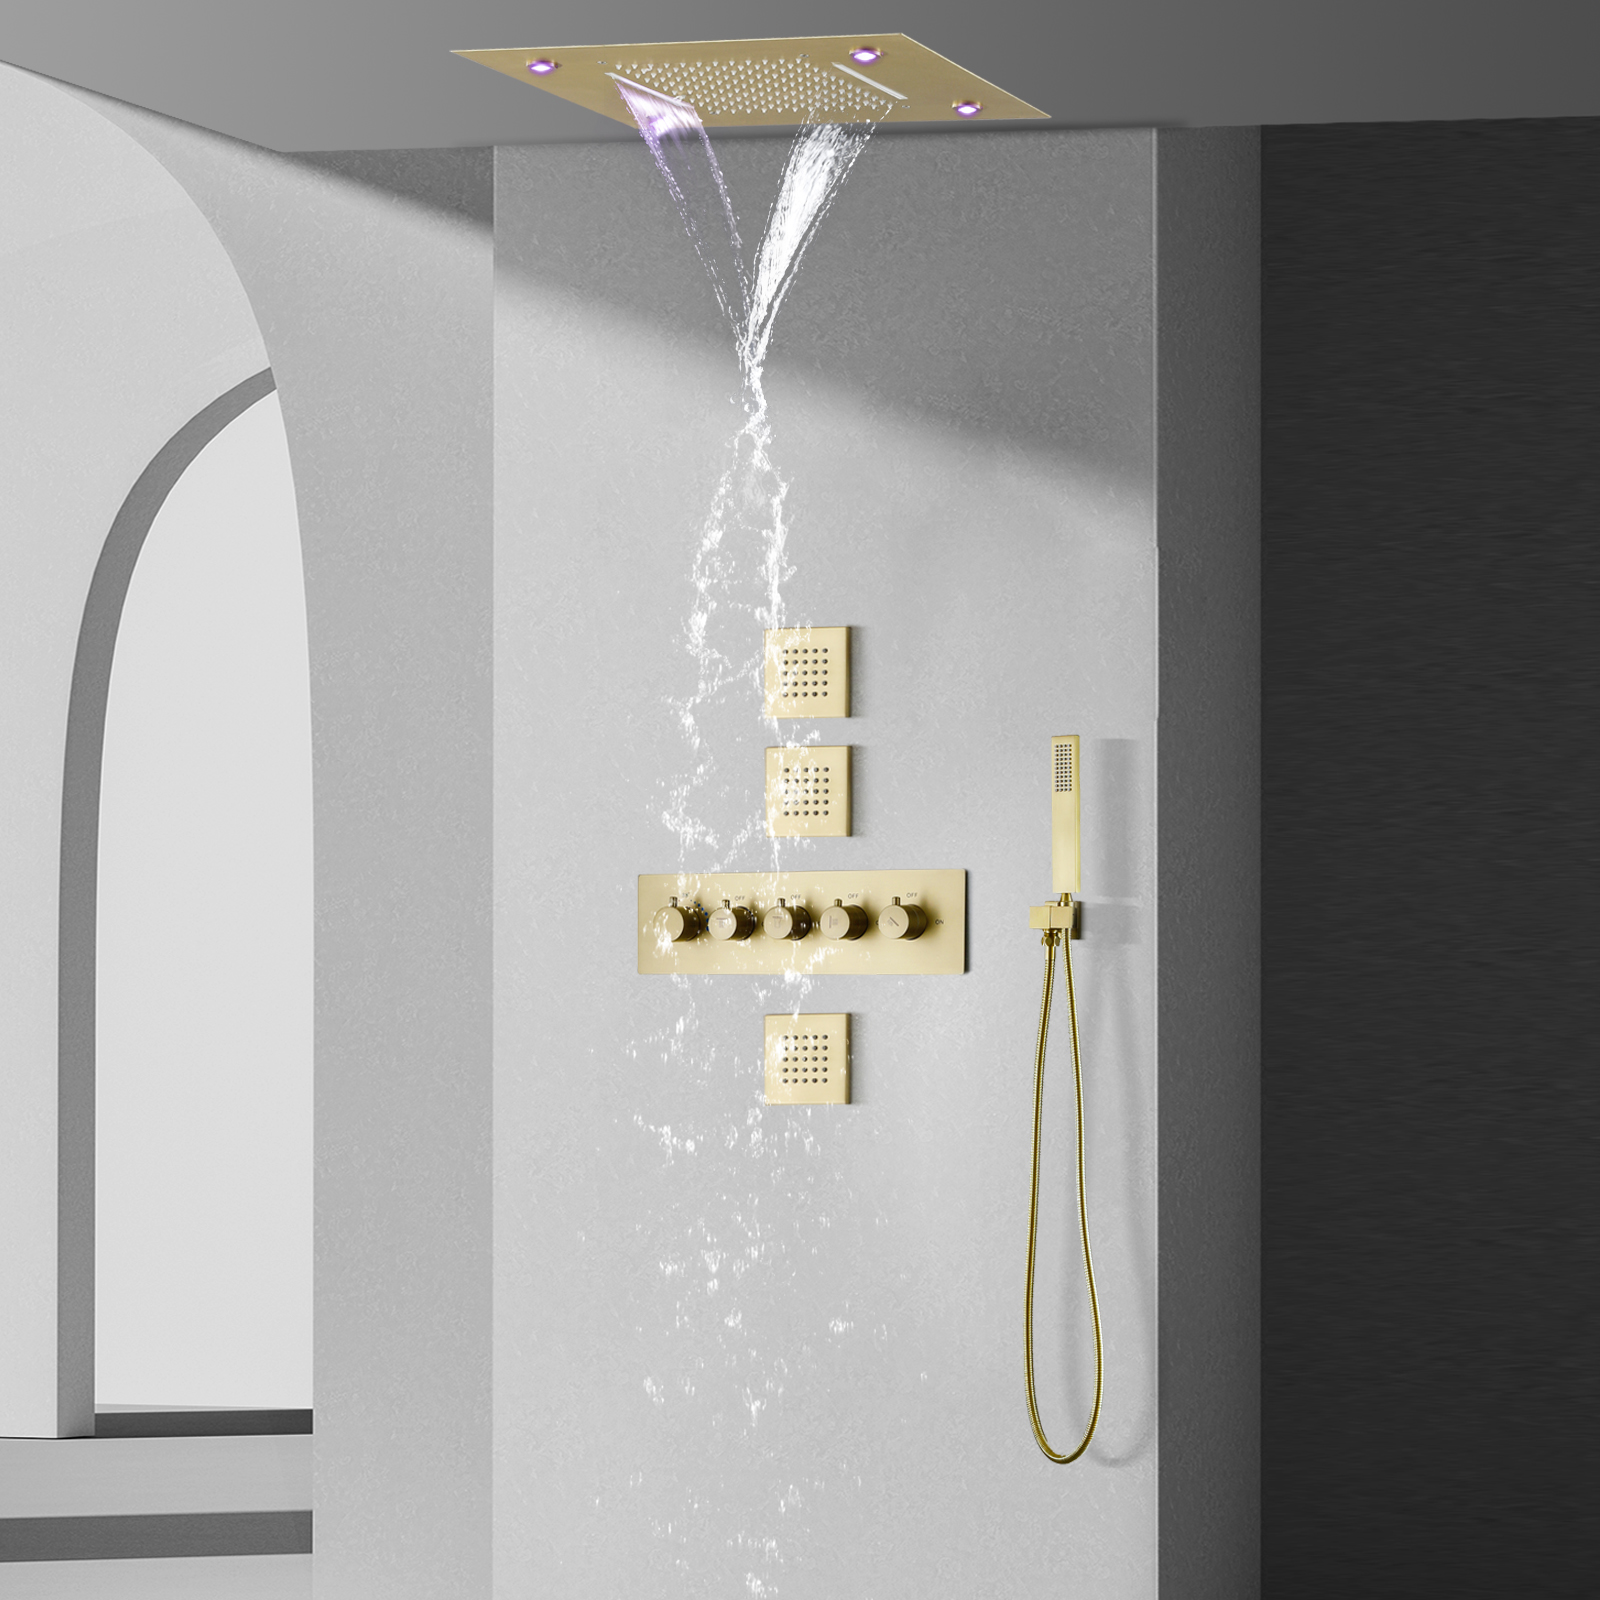 نظام دش المطر الترموستاتي الذهبي المصقول مقاس 14 × 20 بوصة، خلاط حمام رأس دش شلال الأمطار LED